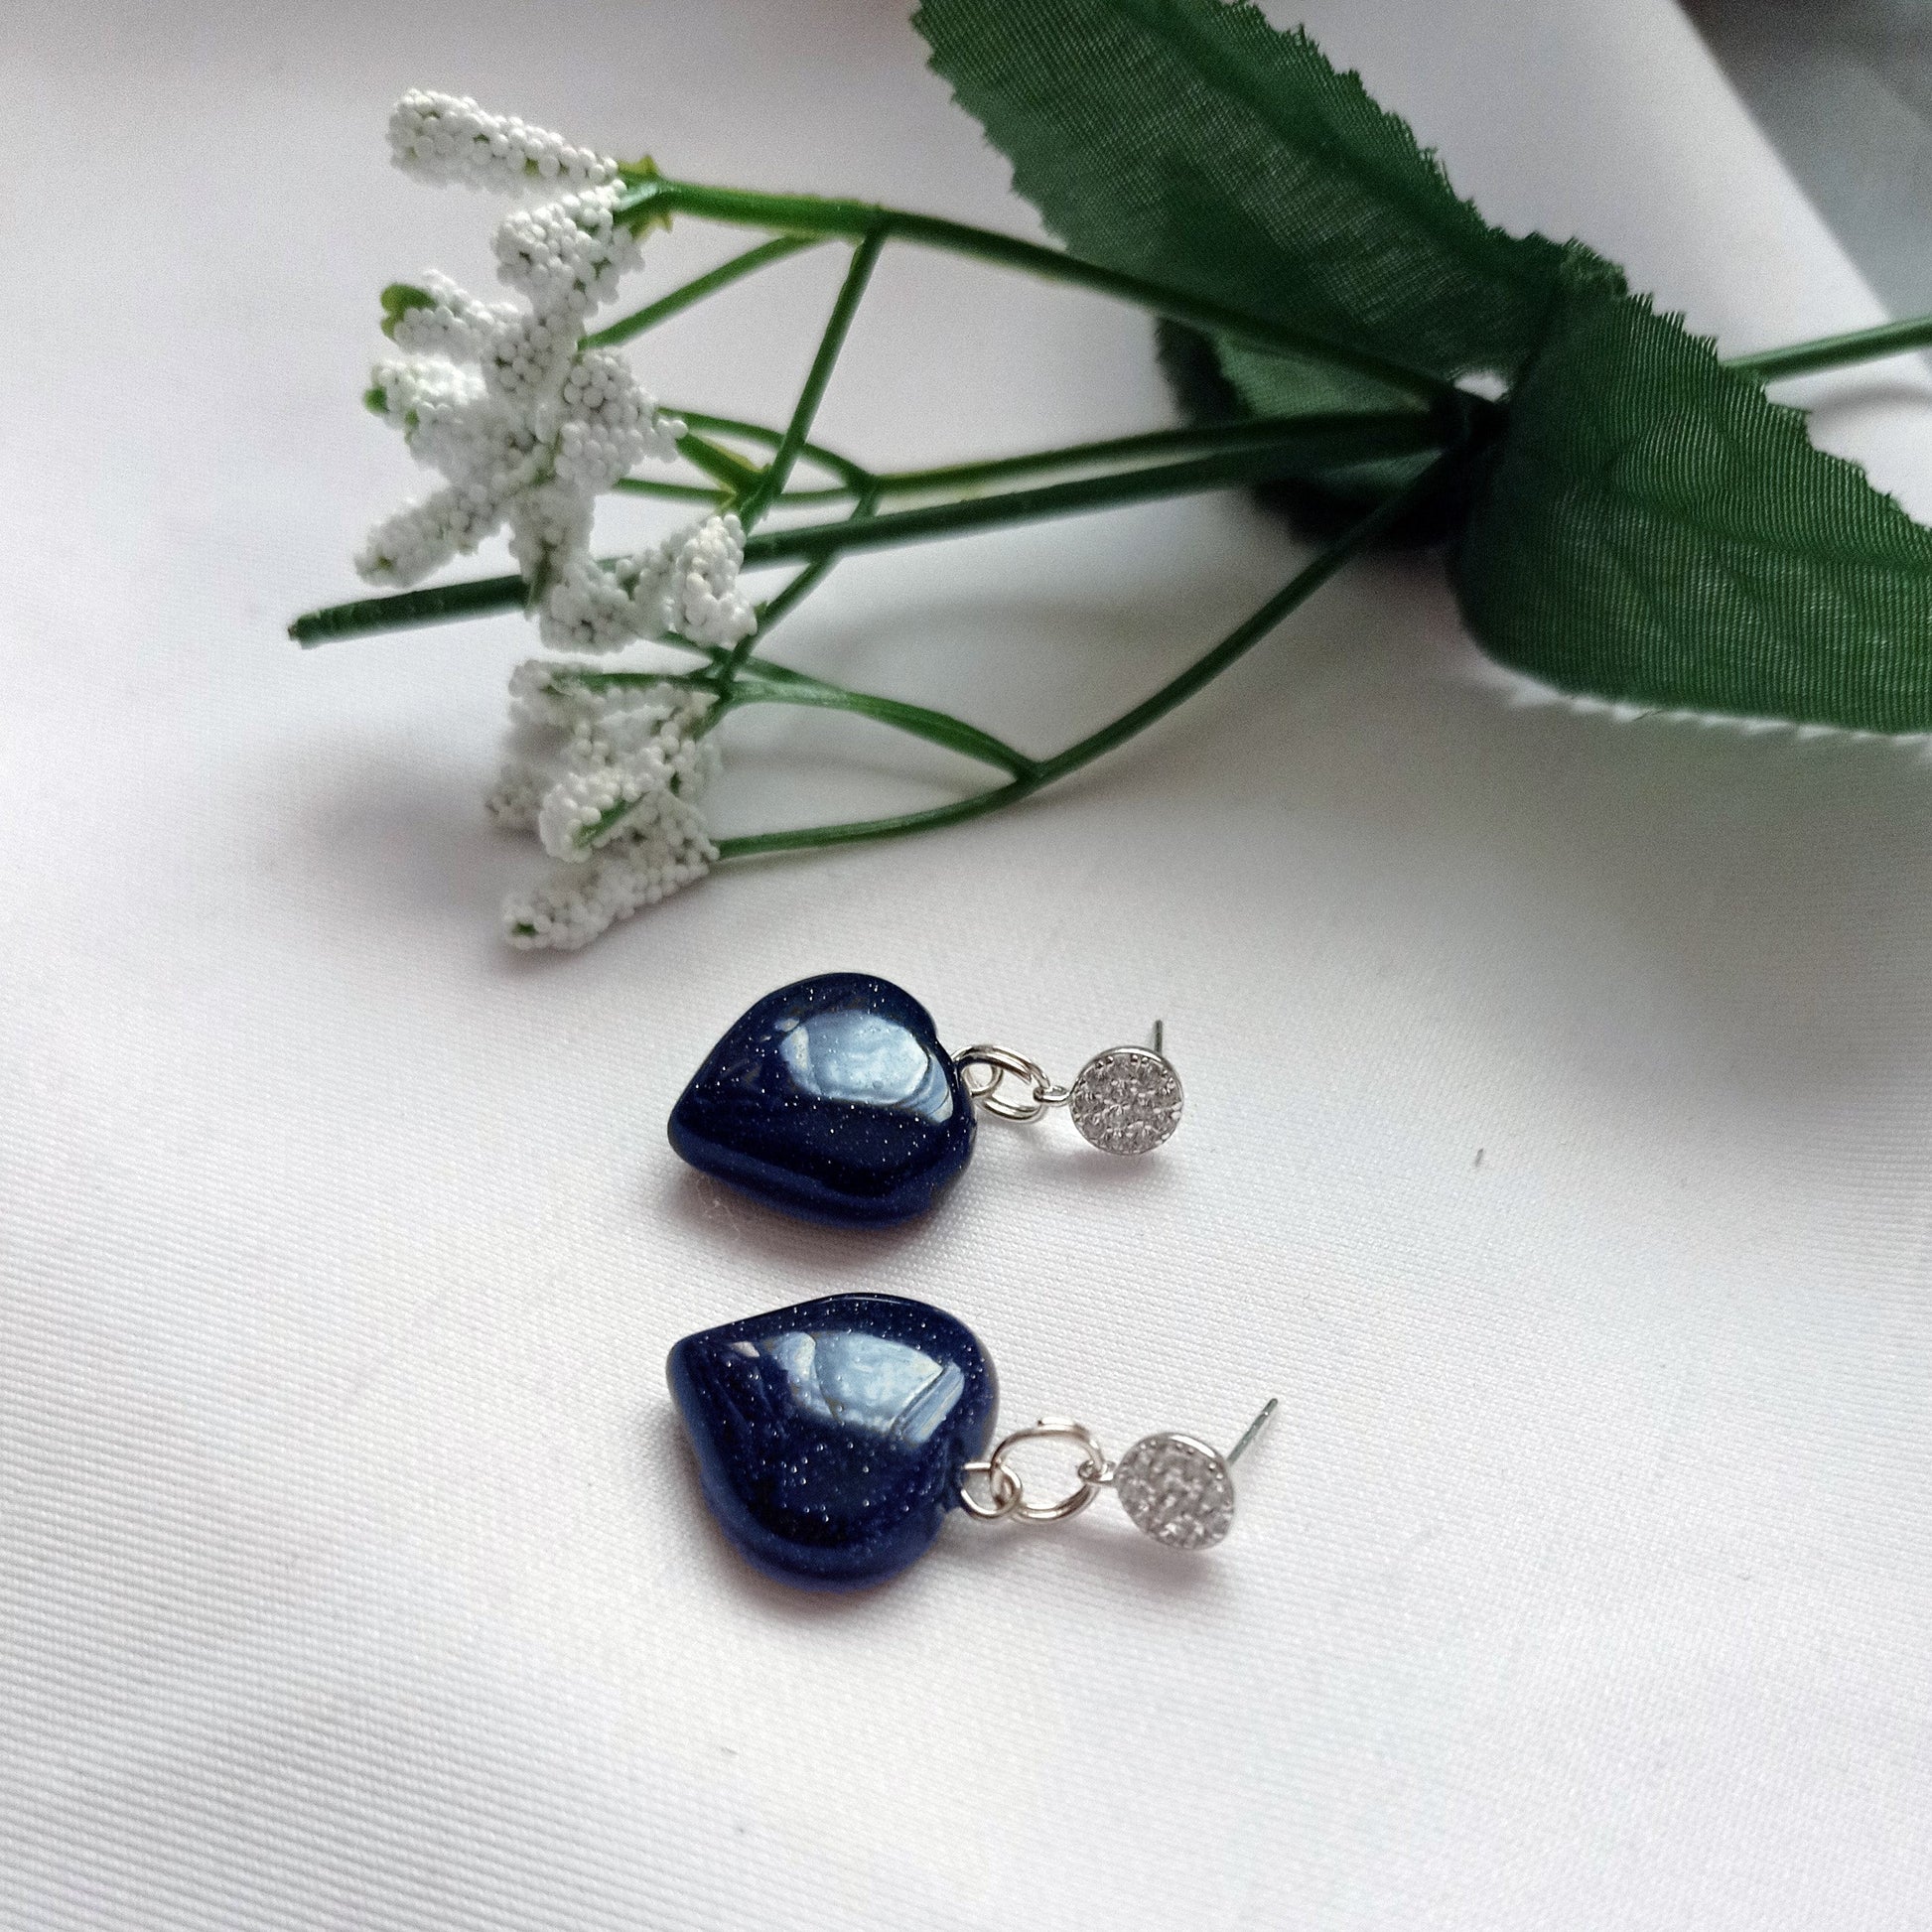 Blue Goldstone Cubic Zirconia Stud Earrings, Besteller Earrings, Sterling Silver Stud Earrings, Heart Earrings, Gemstone Earrings | by nlanlaVictory-5